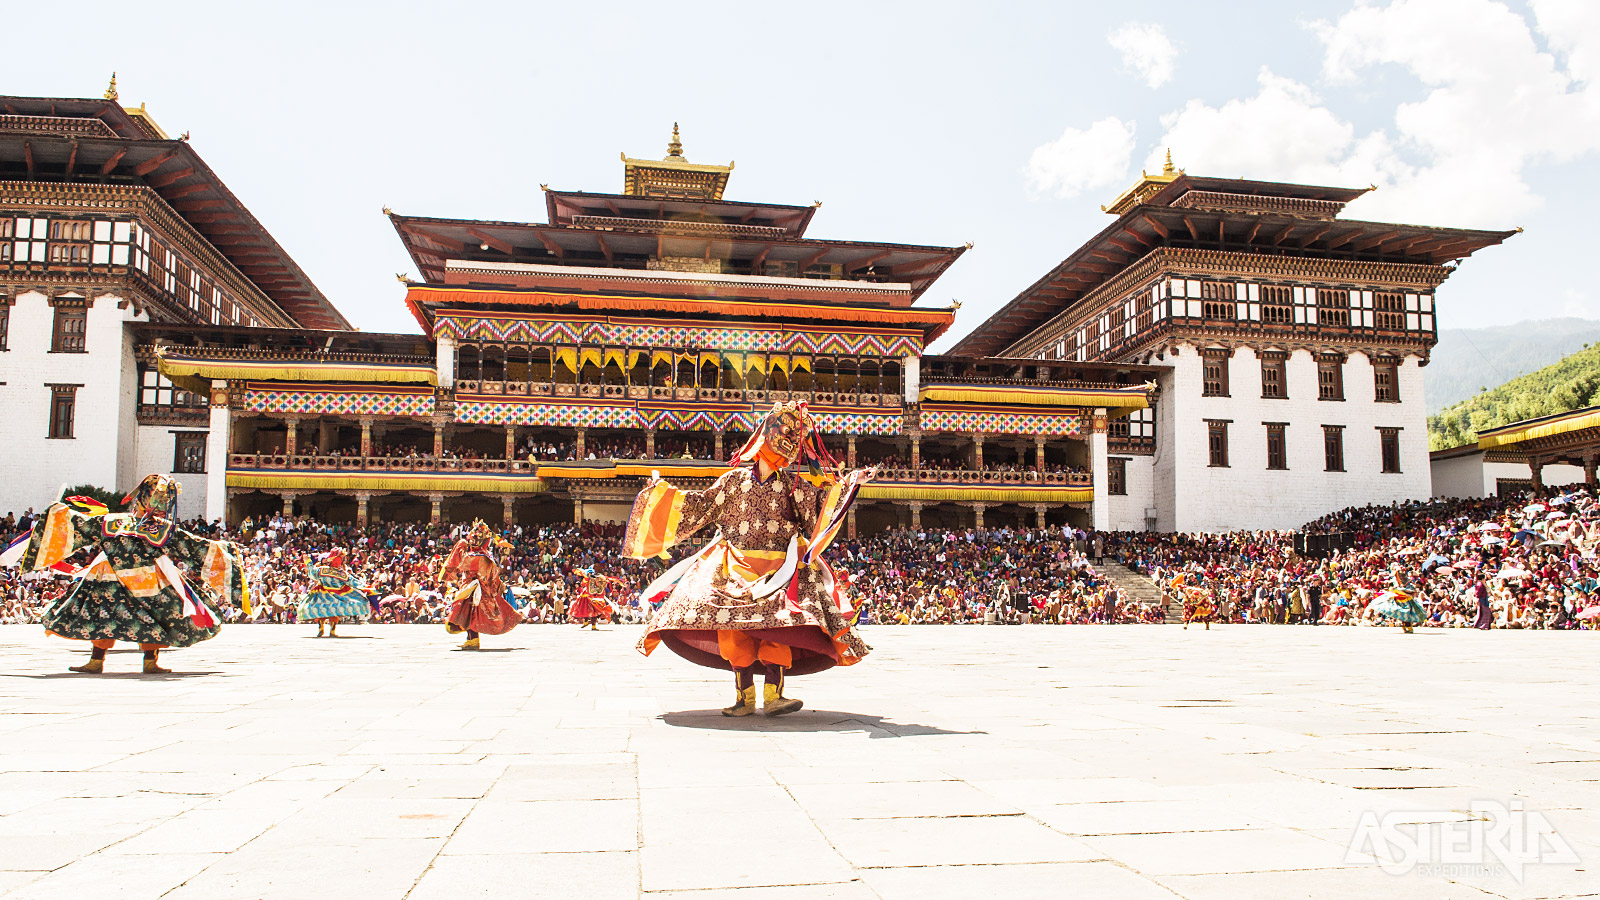 Gemaskerde dansers met zijden kostuums dansen en springen tegen een achtergrond van hemel en bergen tijdens het Thimphu Festival